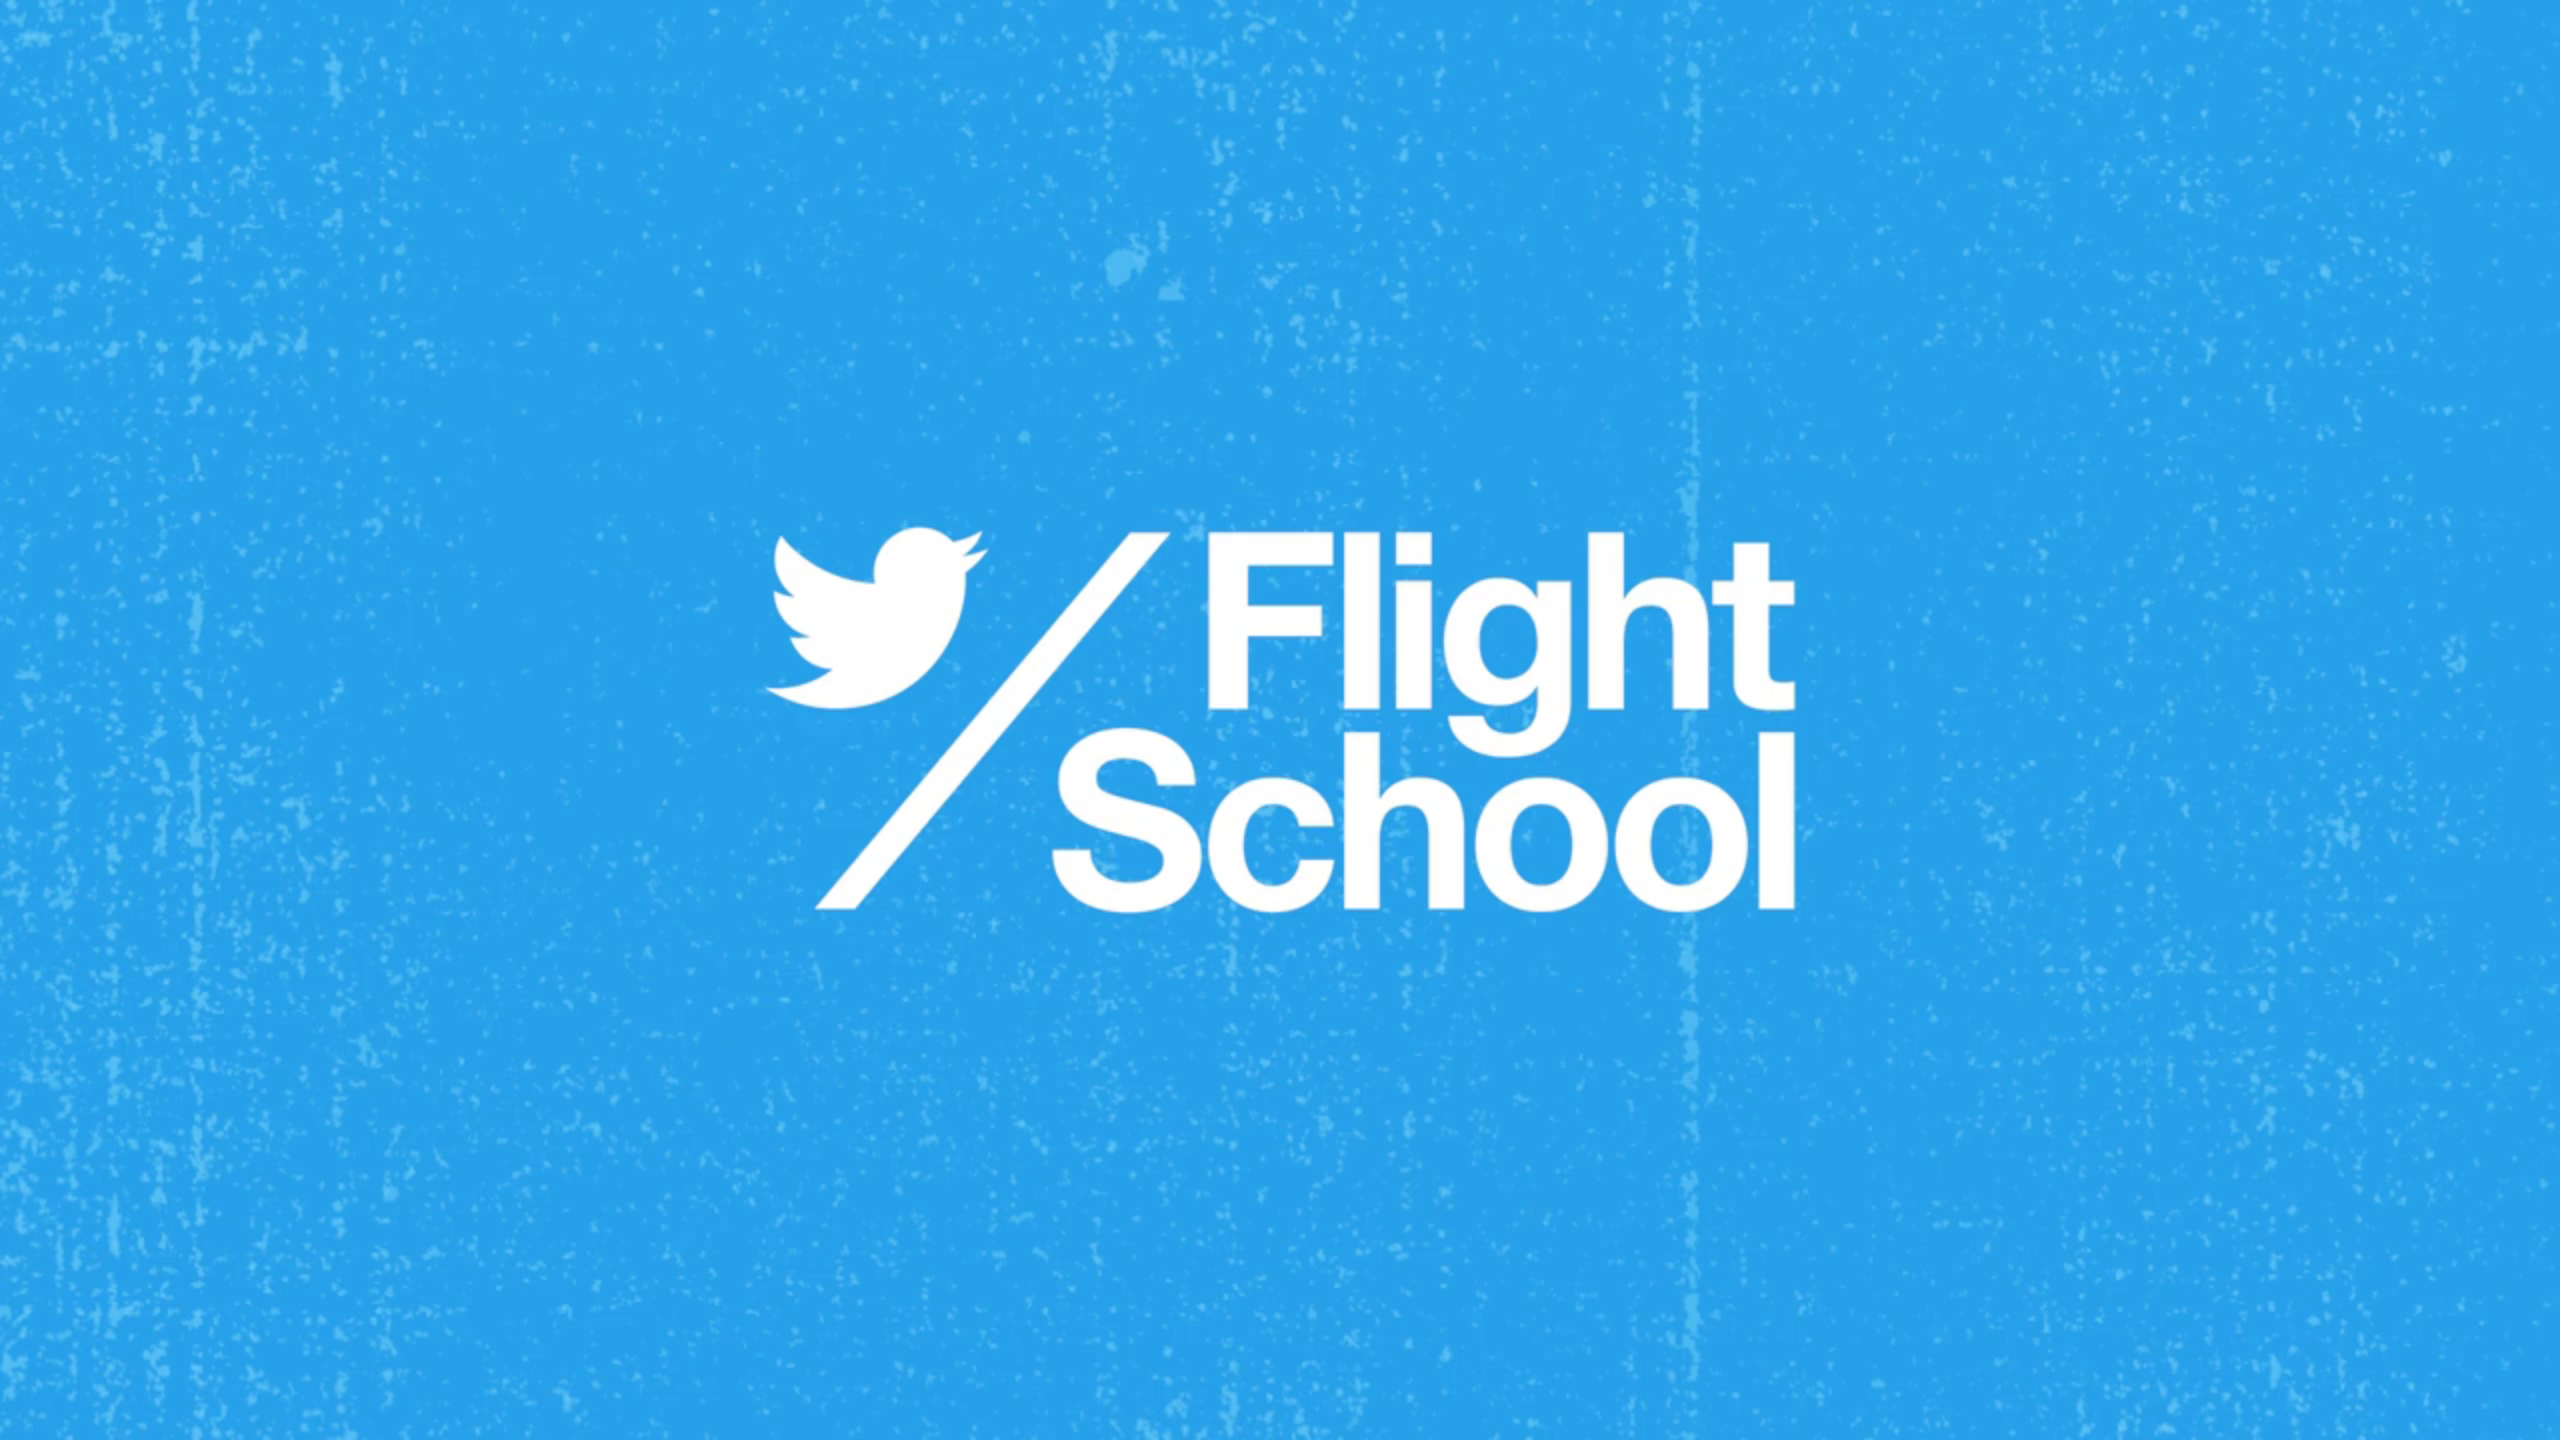 Twitter: Twitter Flight School